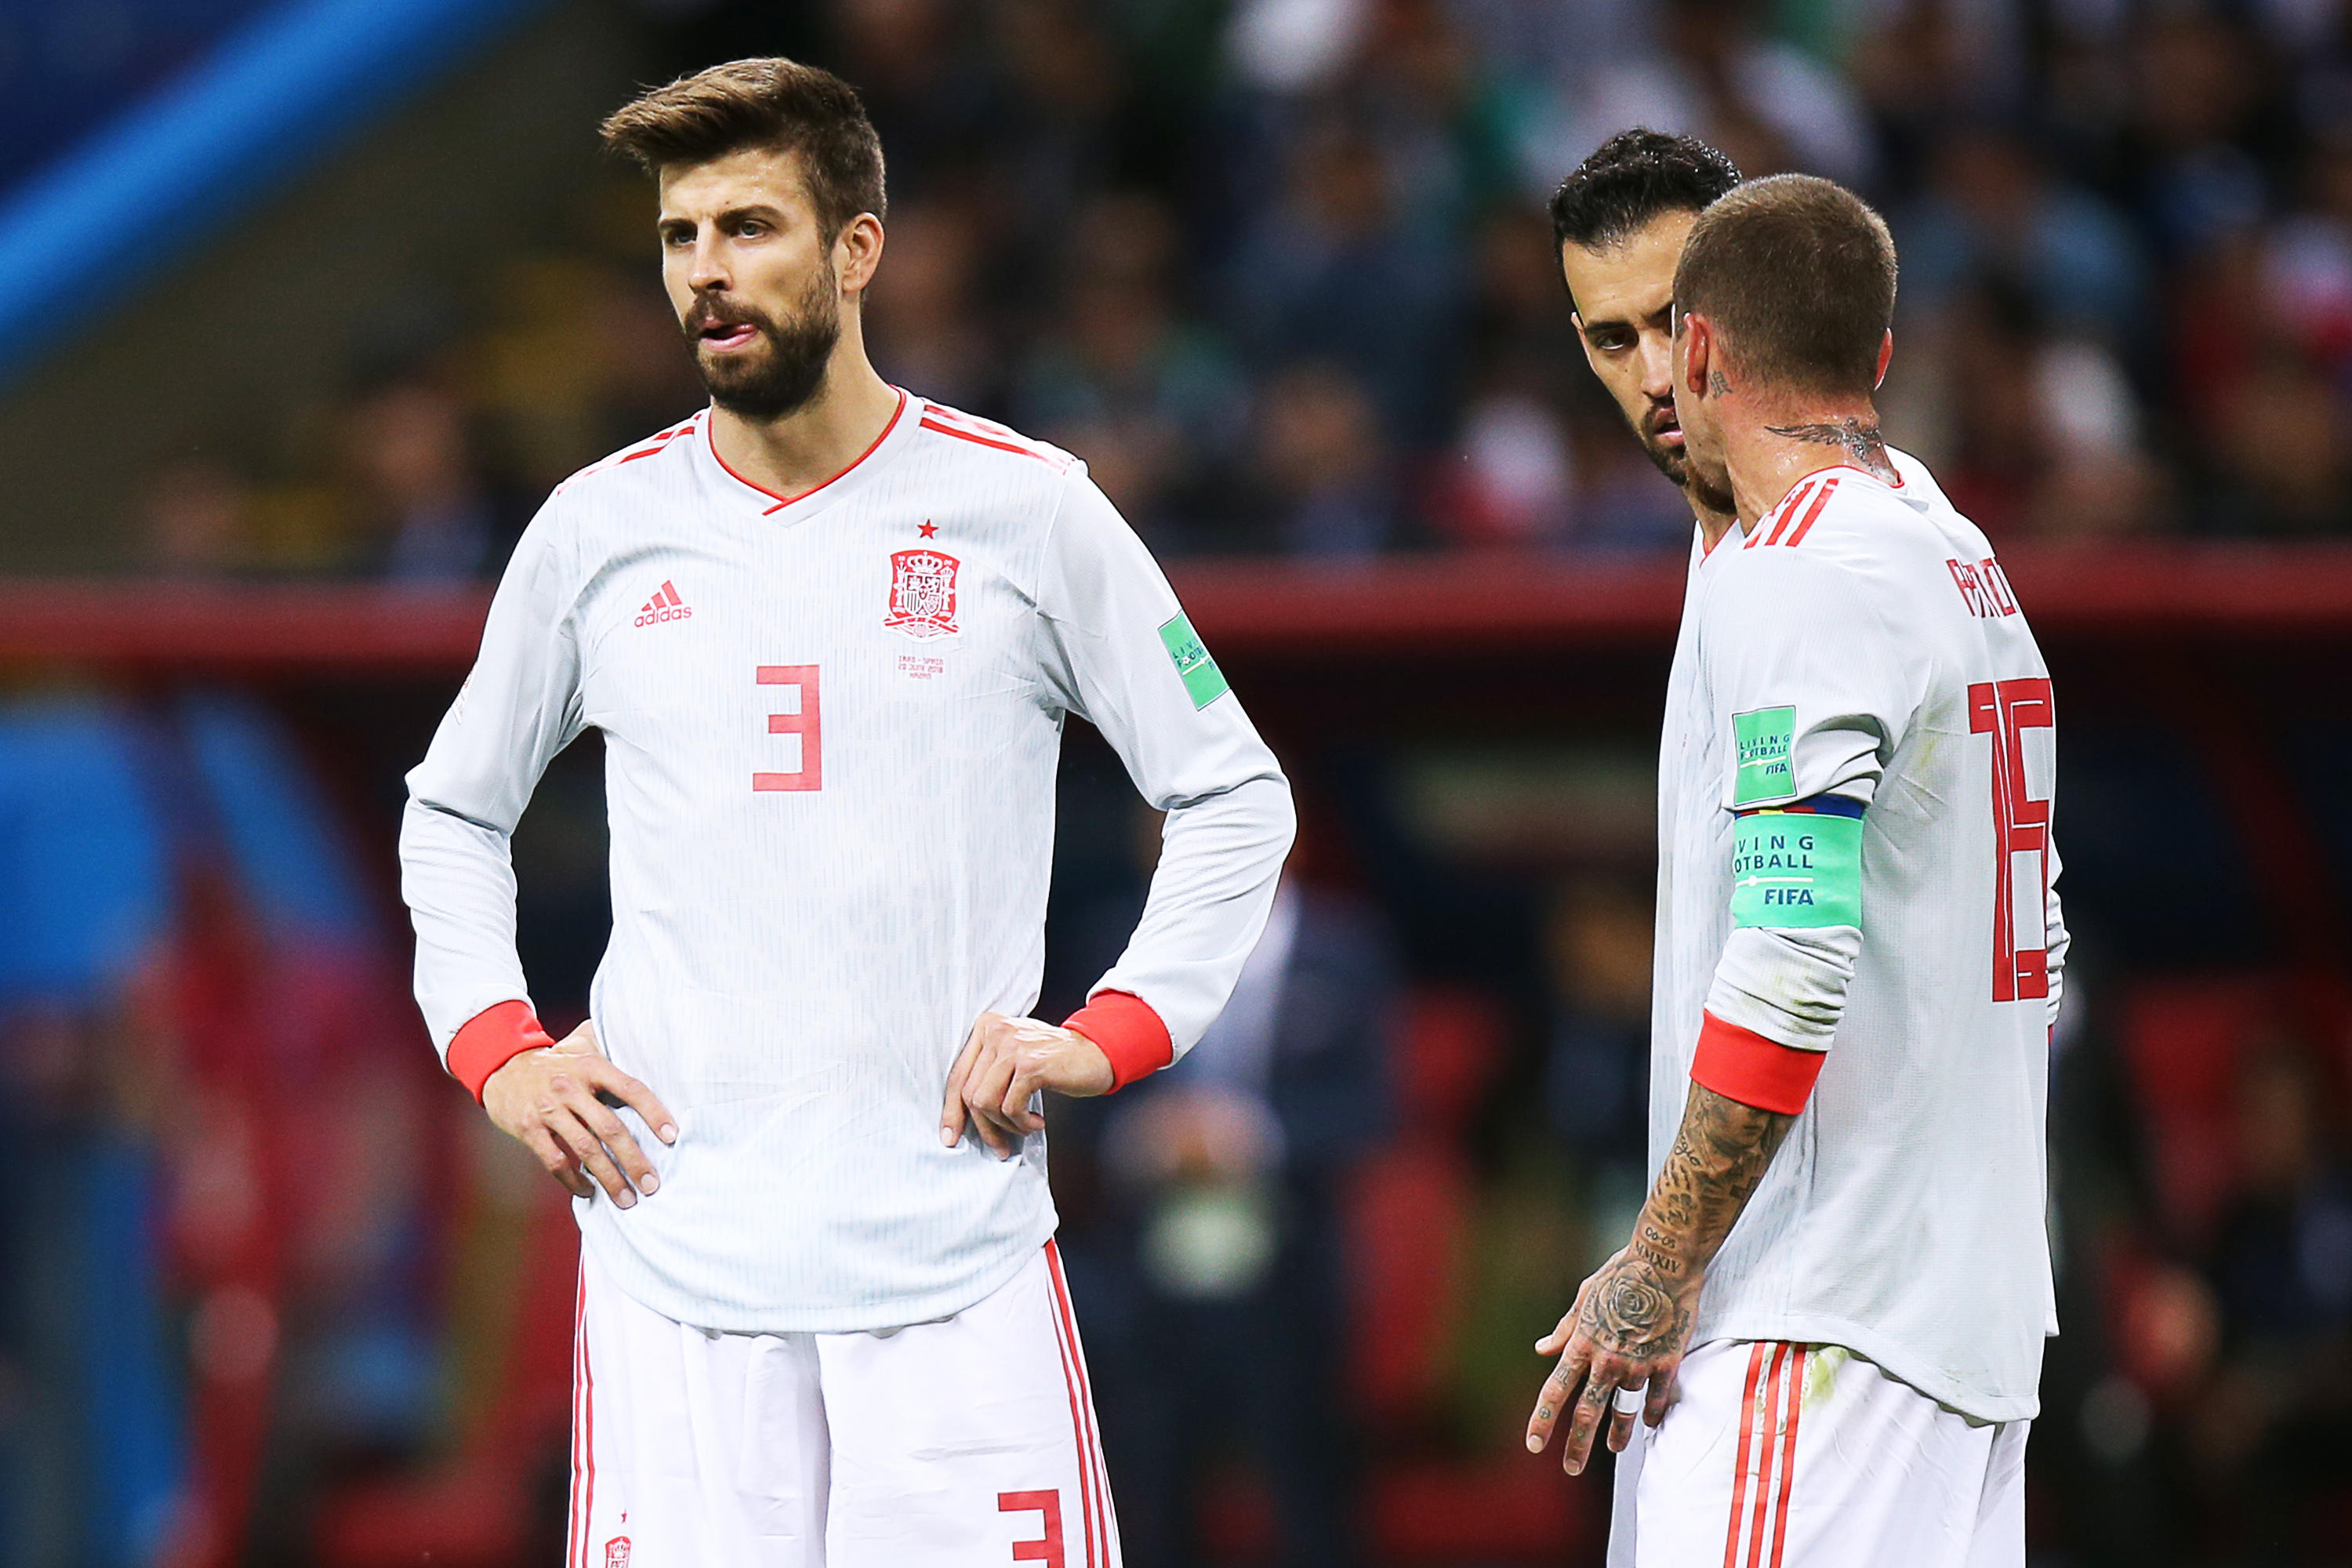 Saiba como assistir a Espanha x Marrocos pela Copa do Mundo 2018